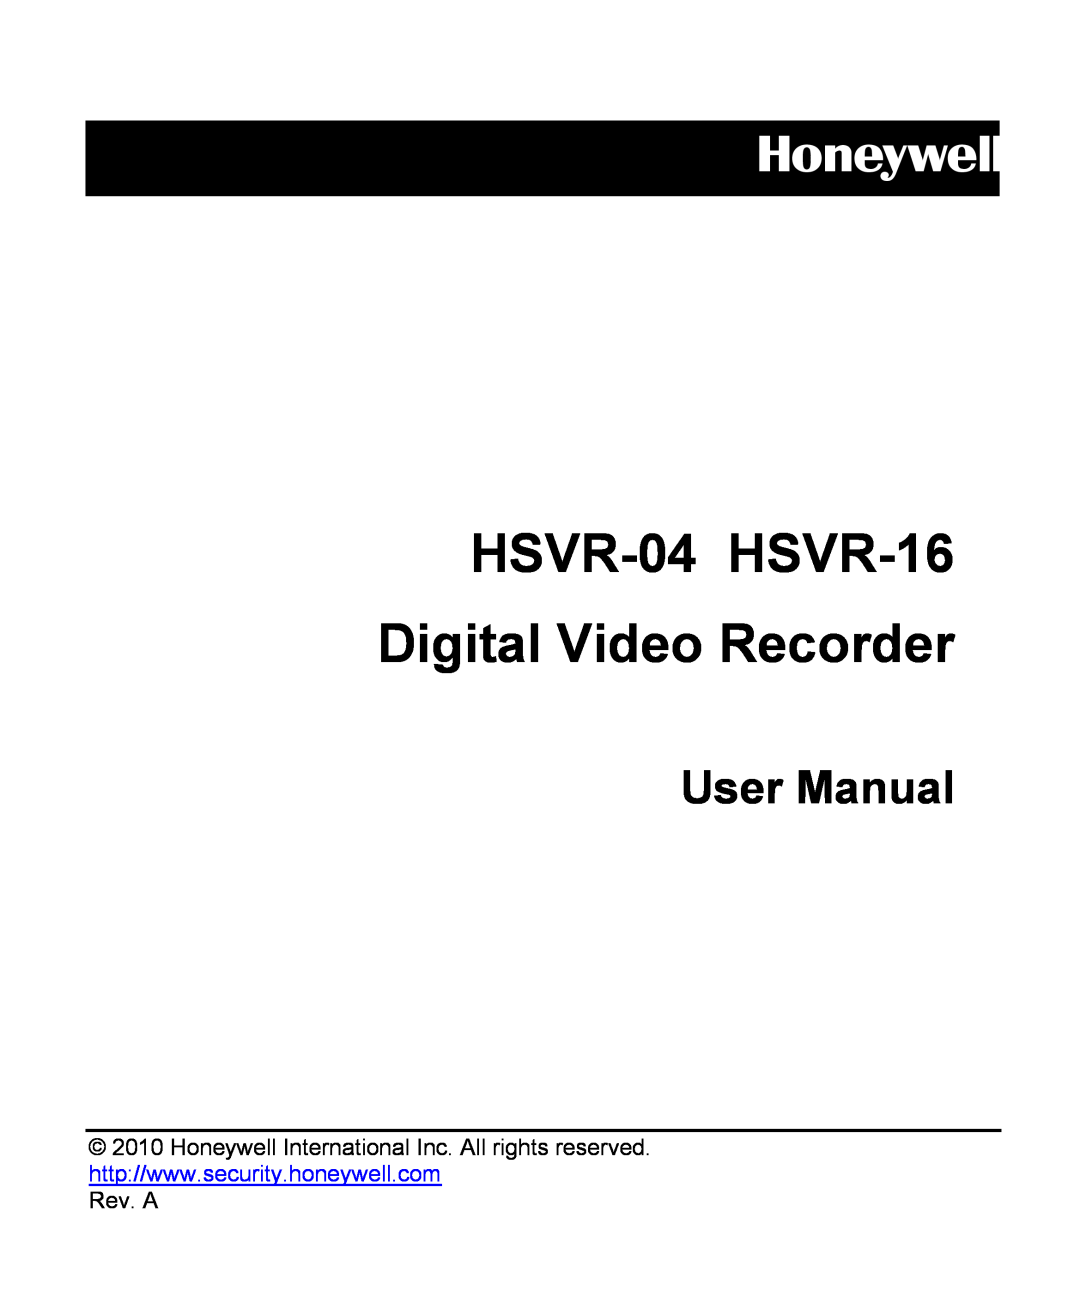 Honeywell user manual Rev. A, HSVR-04 HSVR-16 Digital Video Recorder, Honeywell, User Manual 